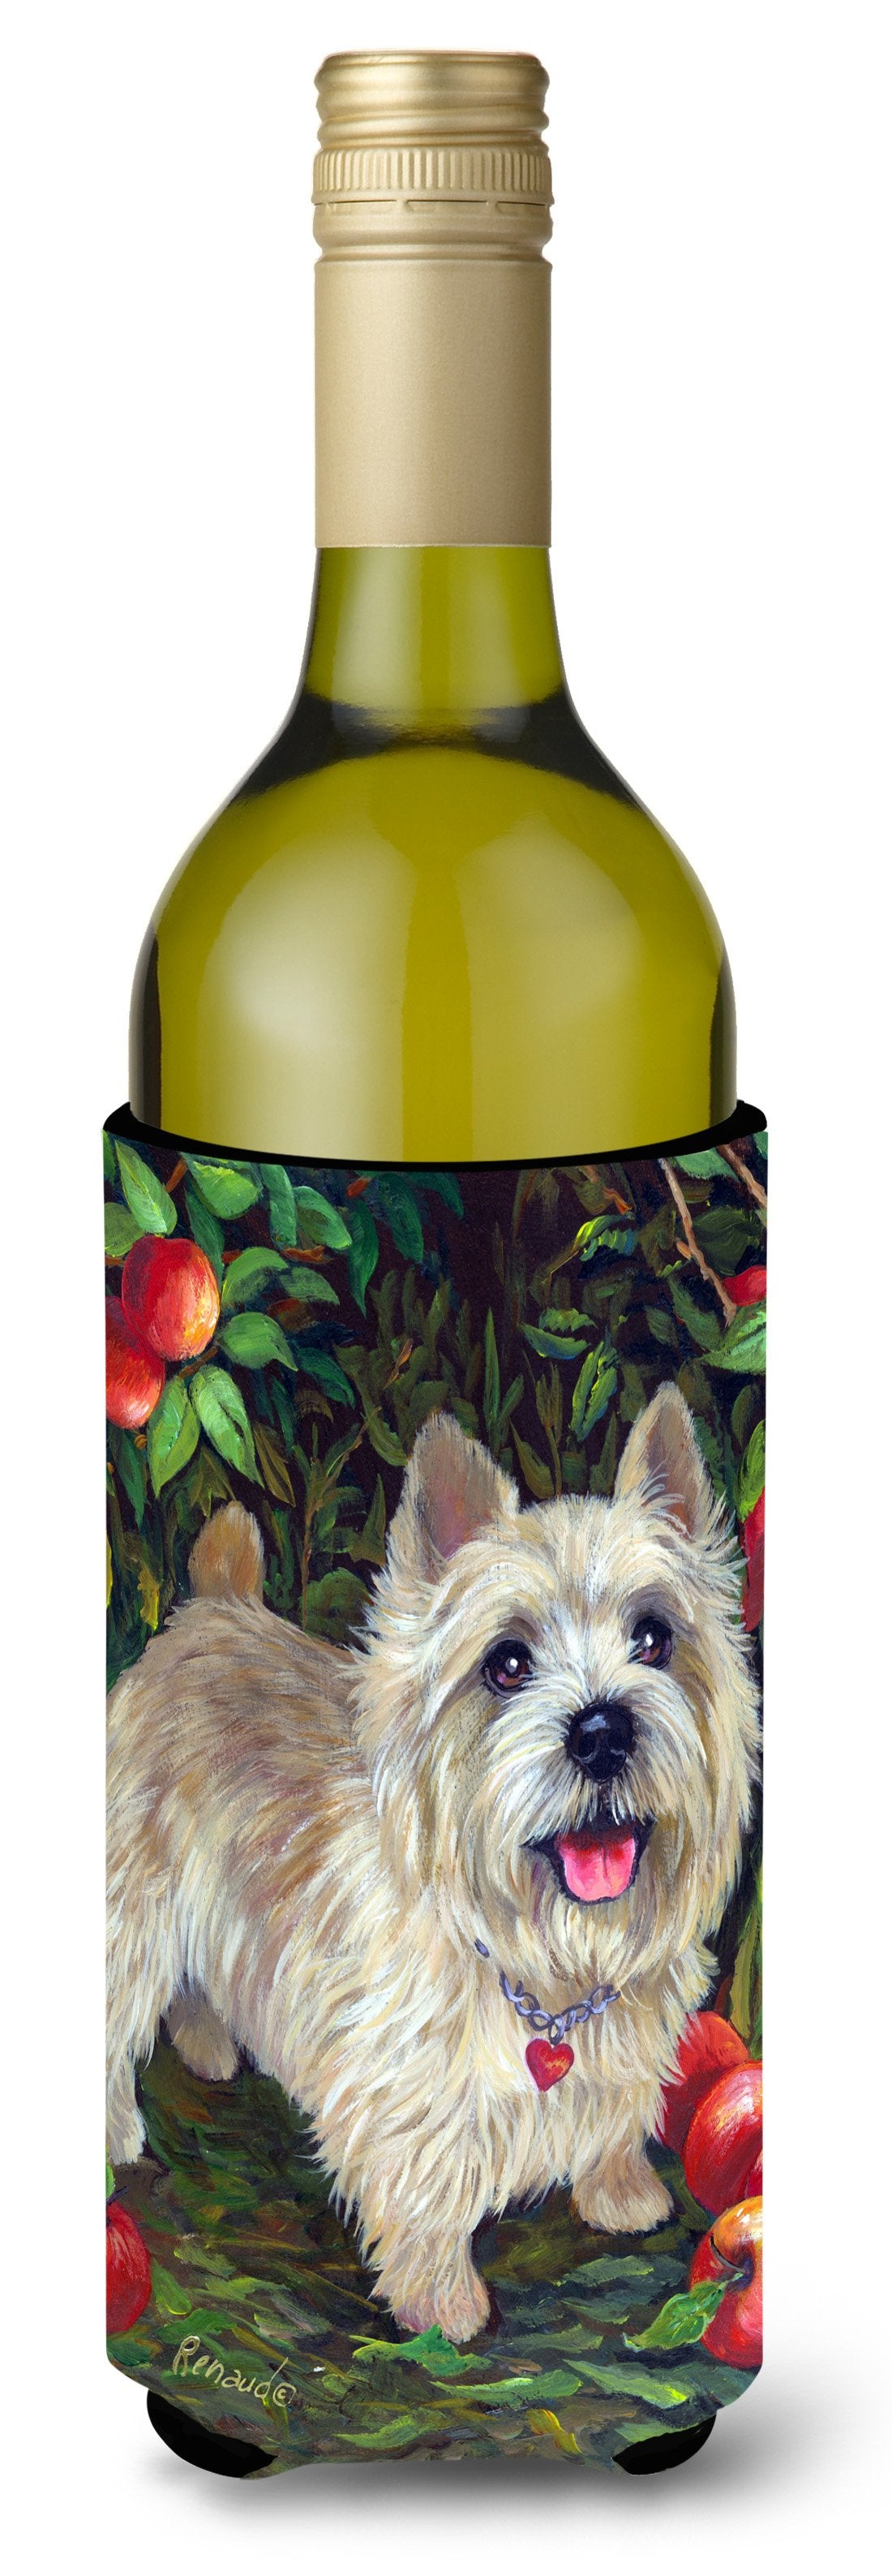 Cairn Terrier Apples Wine Bottle Hugger PPP3042LITERK by Caroline's Treasures